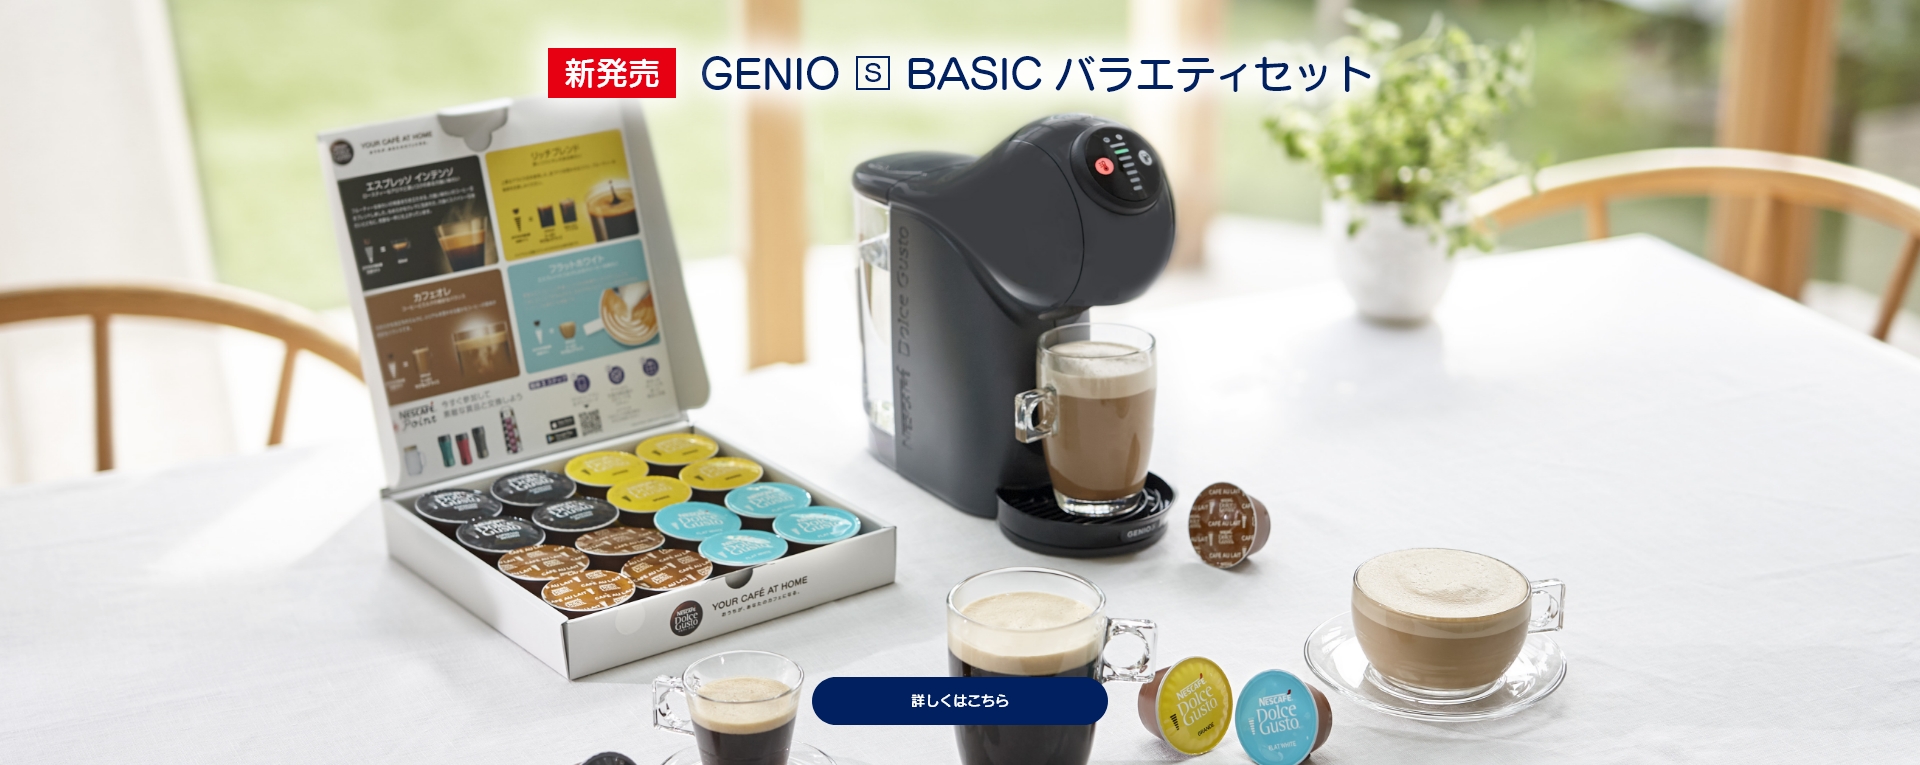 新発売 GENIO S BASIC バラエティセット